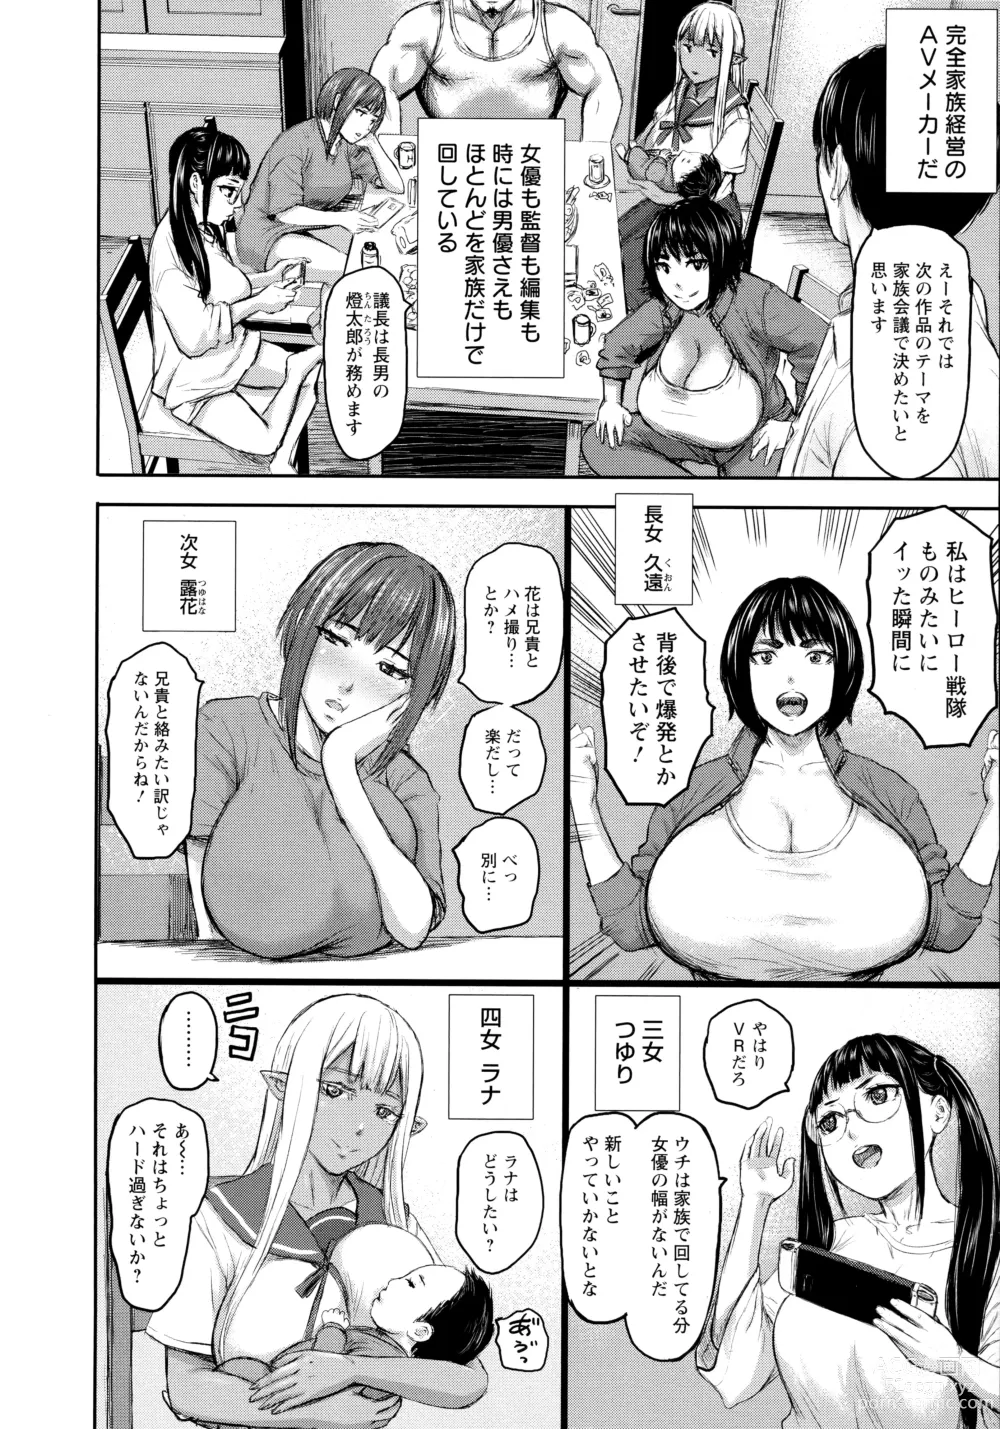 Page 17 of manga AV Family + bonuses